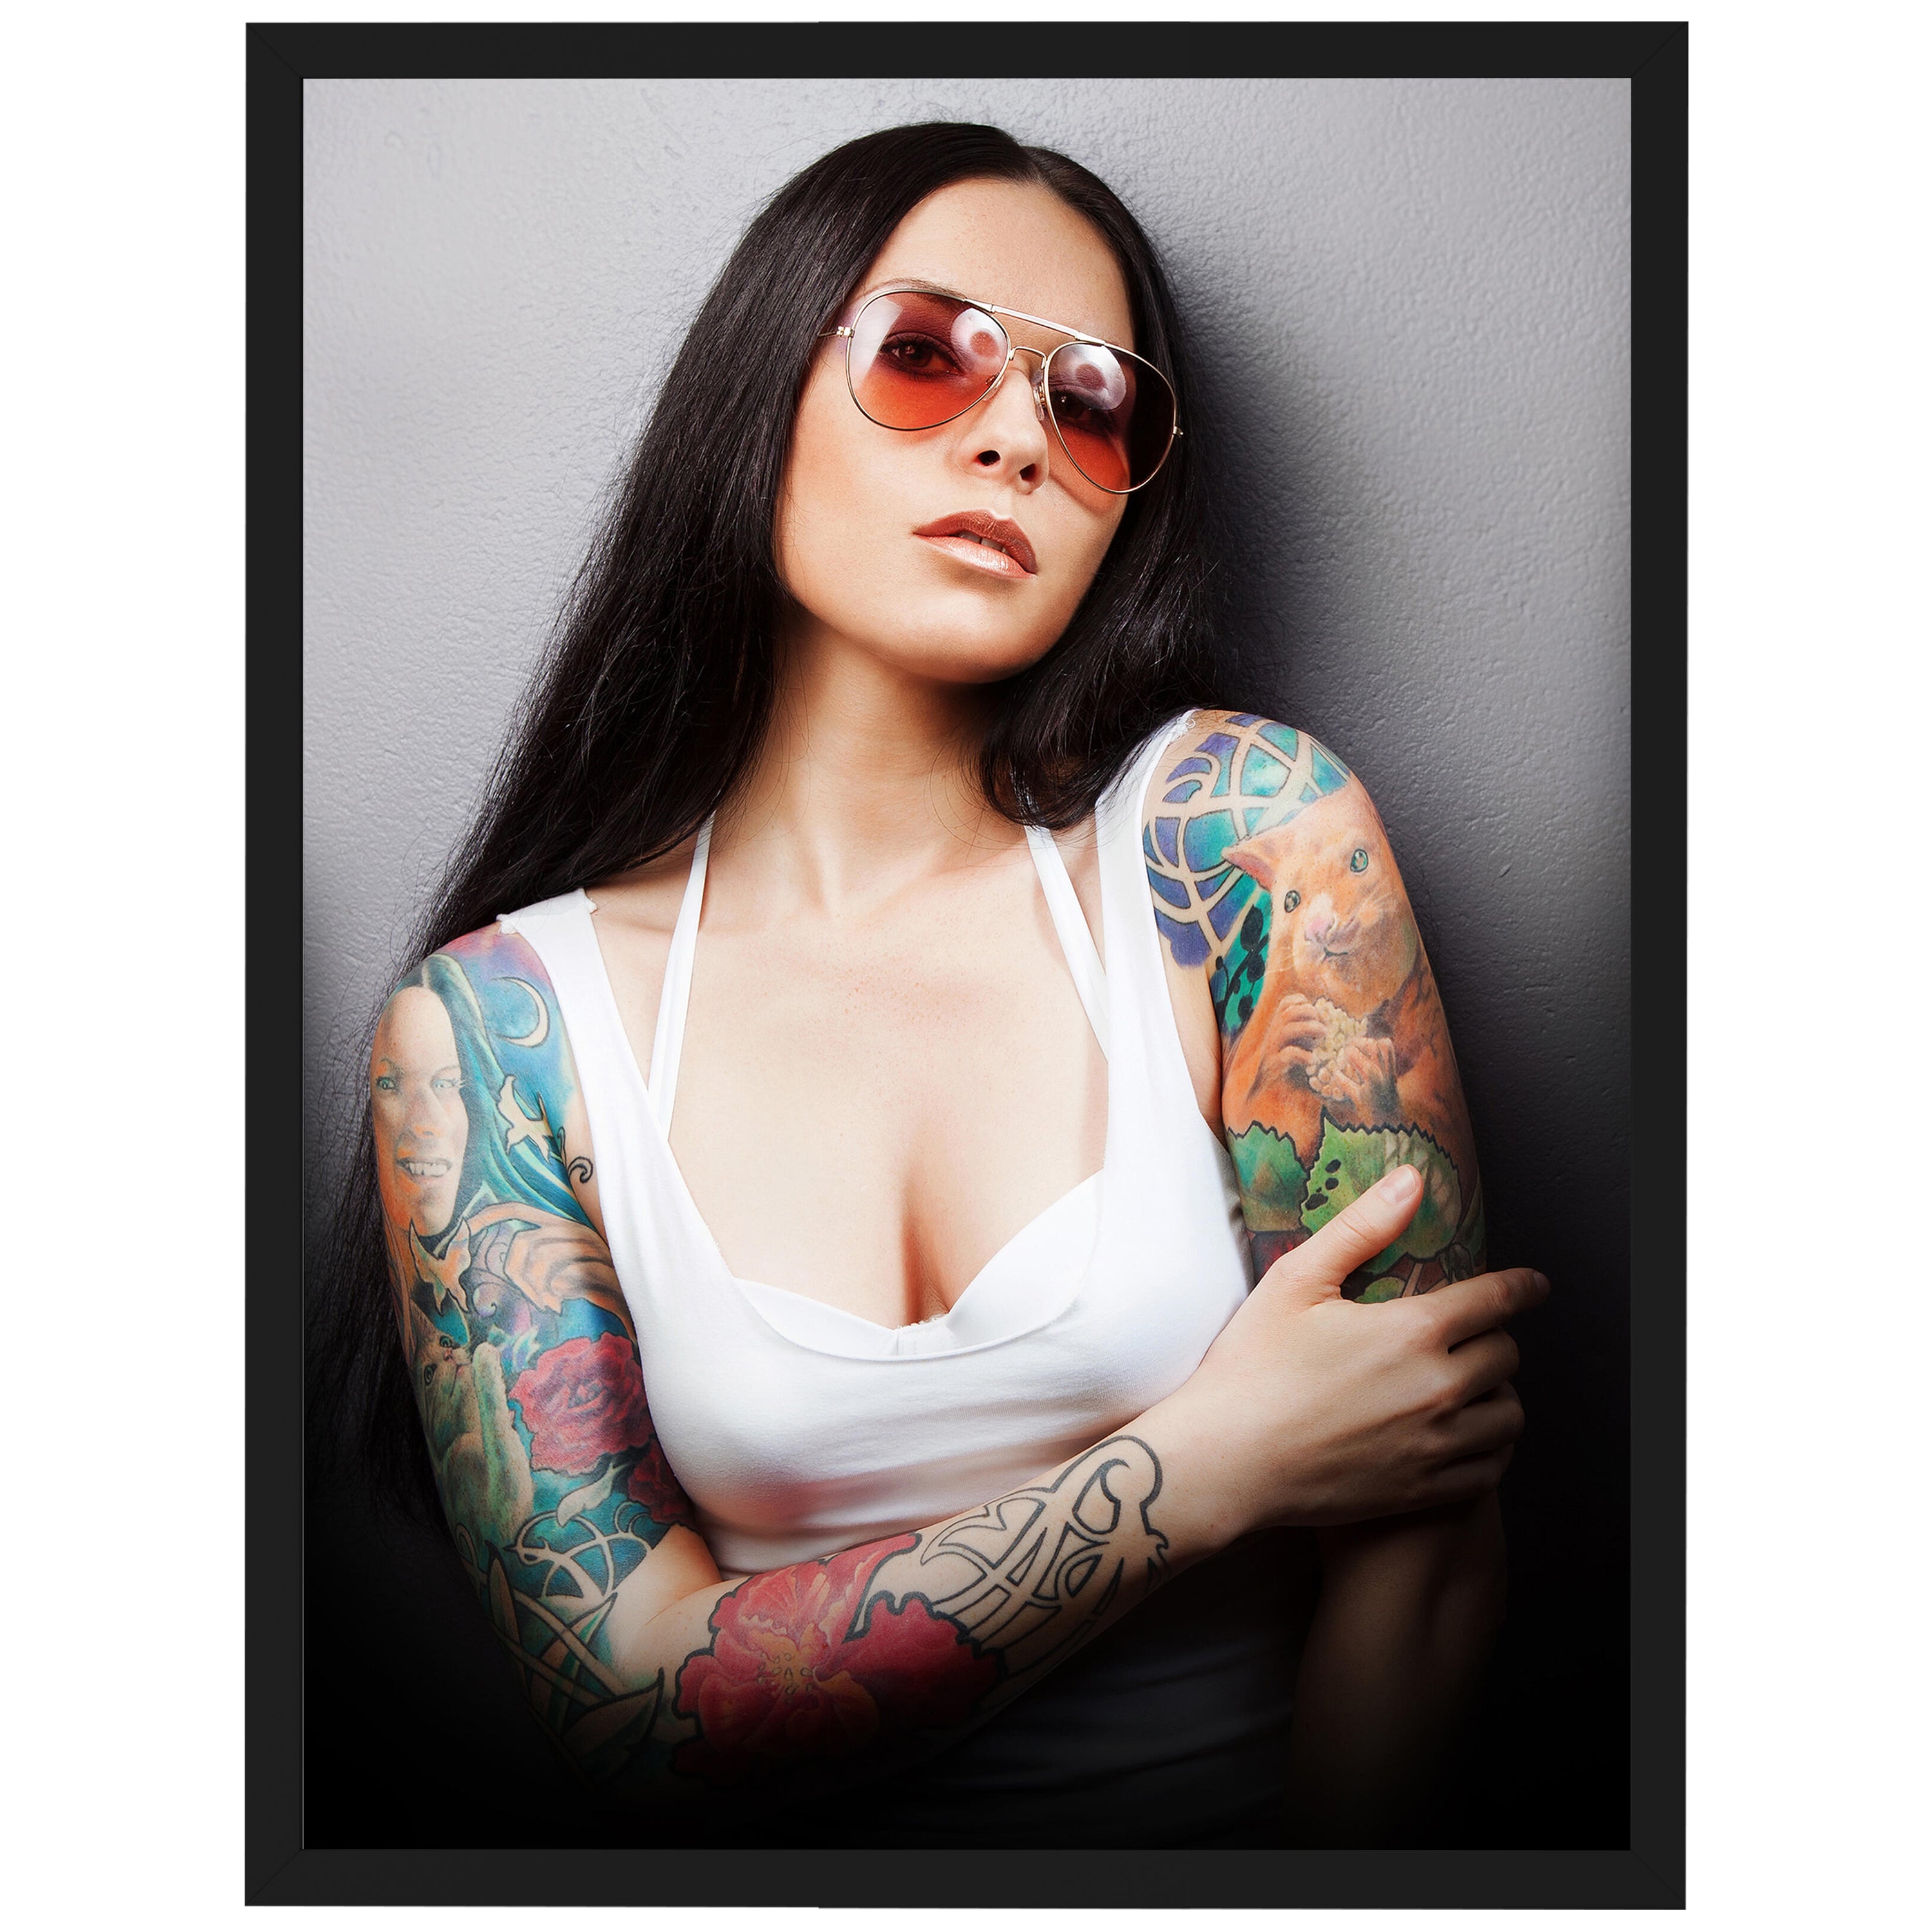 wandmotiv24 Poster, Poster - Frau, Tattoo, Arm - M0177 - Bild 1